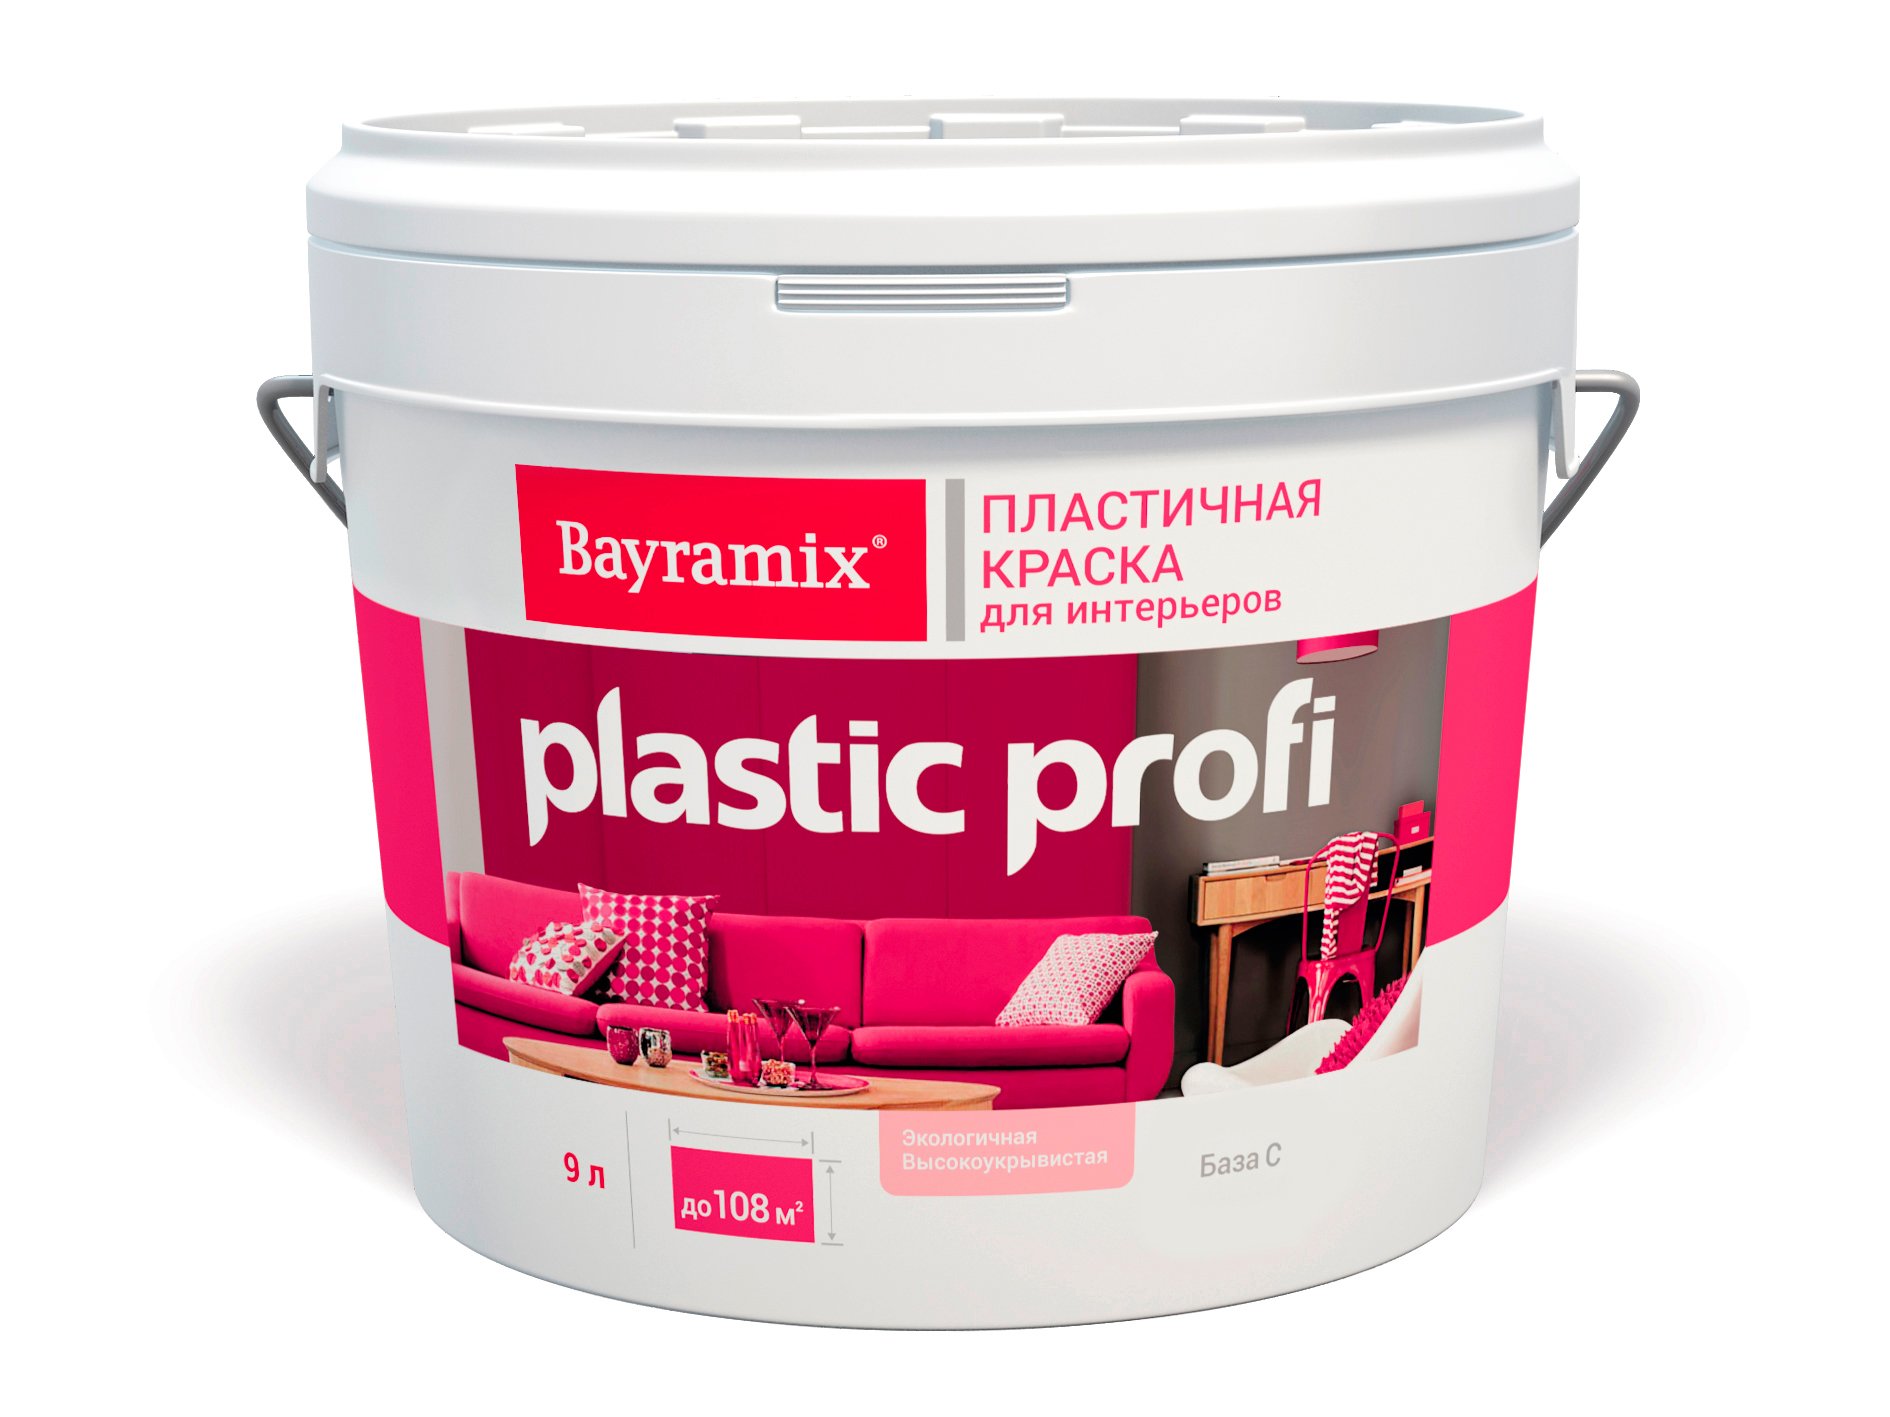 Краска матовая Bayramix Plastik Profi База C бесцветная 12,5кг/9,0л (только колеровка) набор предметов для ванной proff plastik